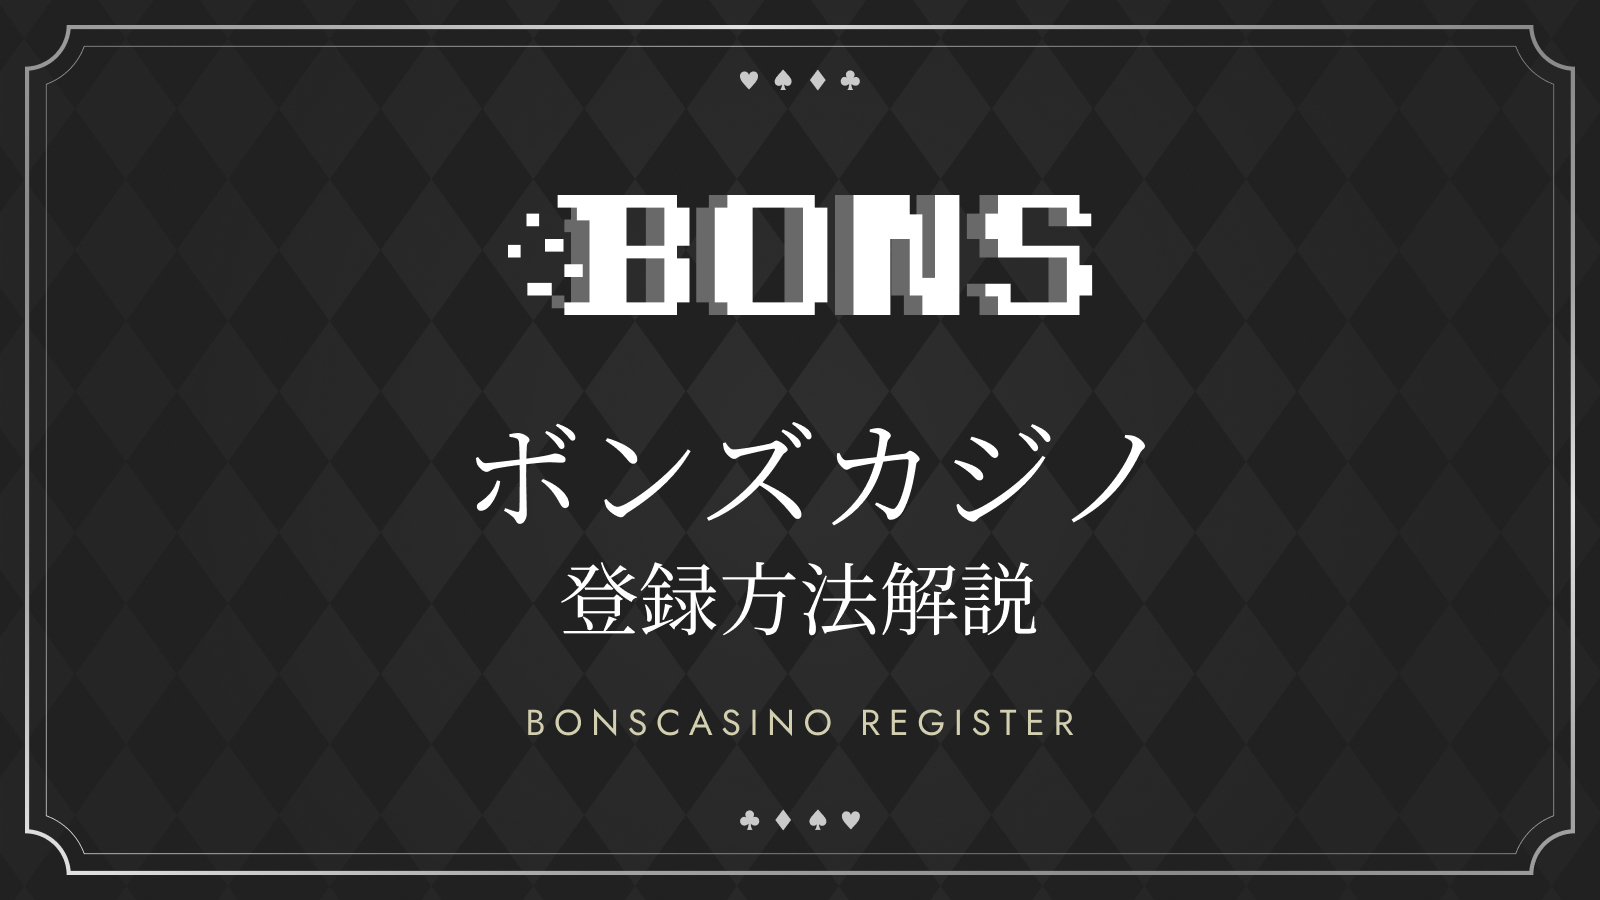 ボンズカジノの登録方法解説 BONSCASINO REGISTER